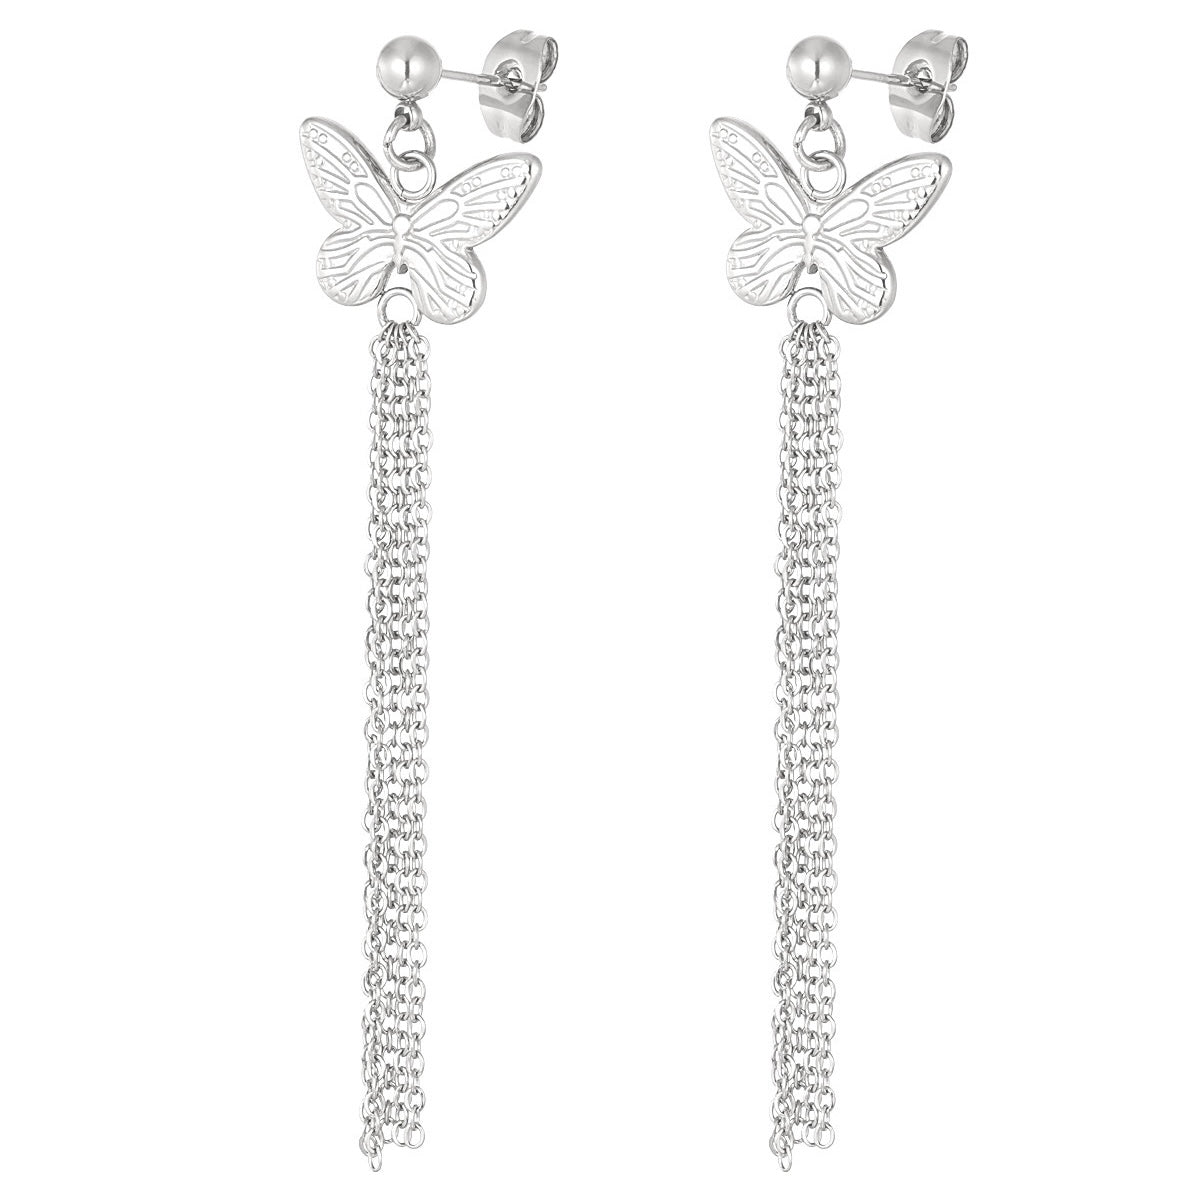 Butterfly Earrings - Silver